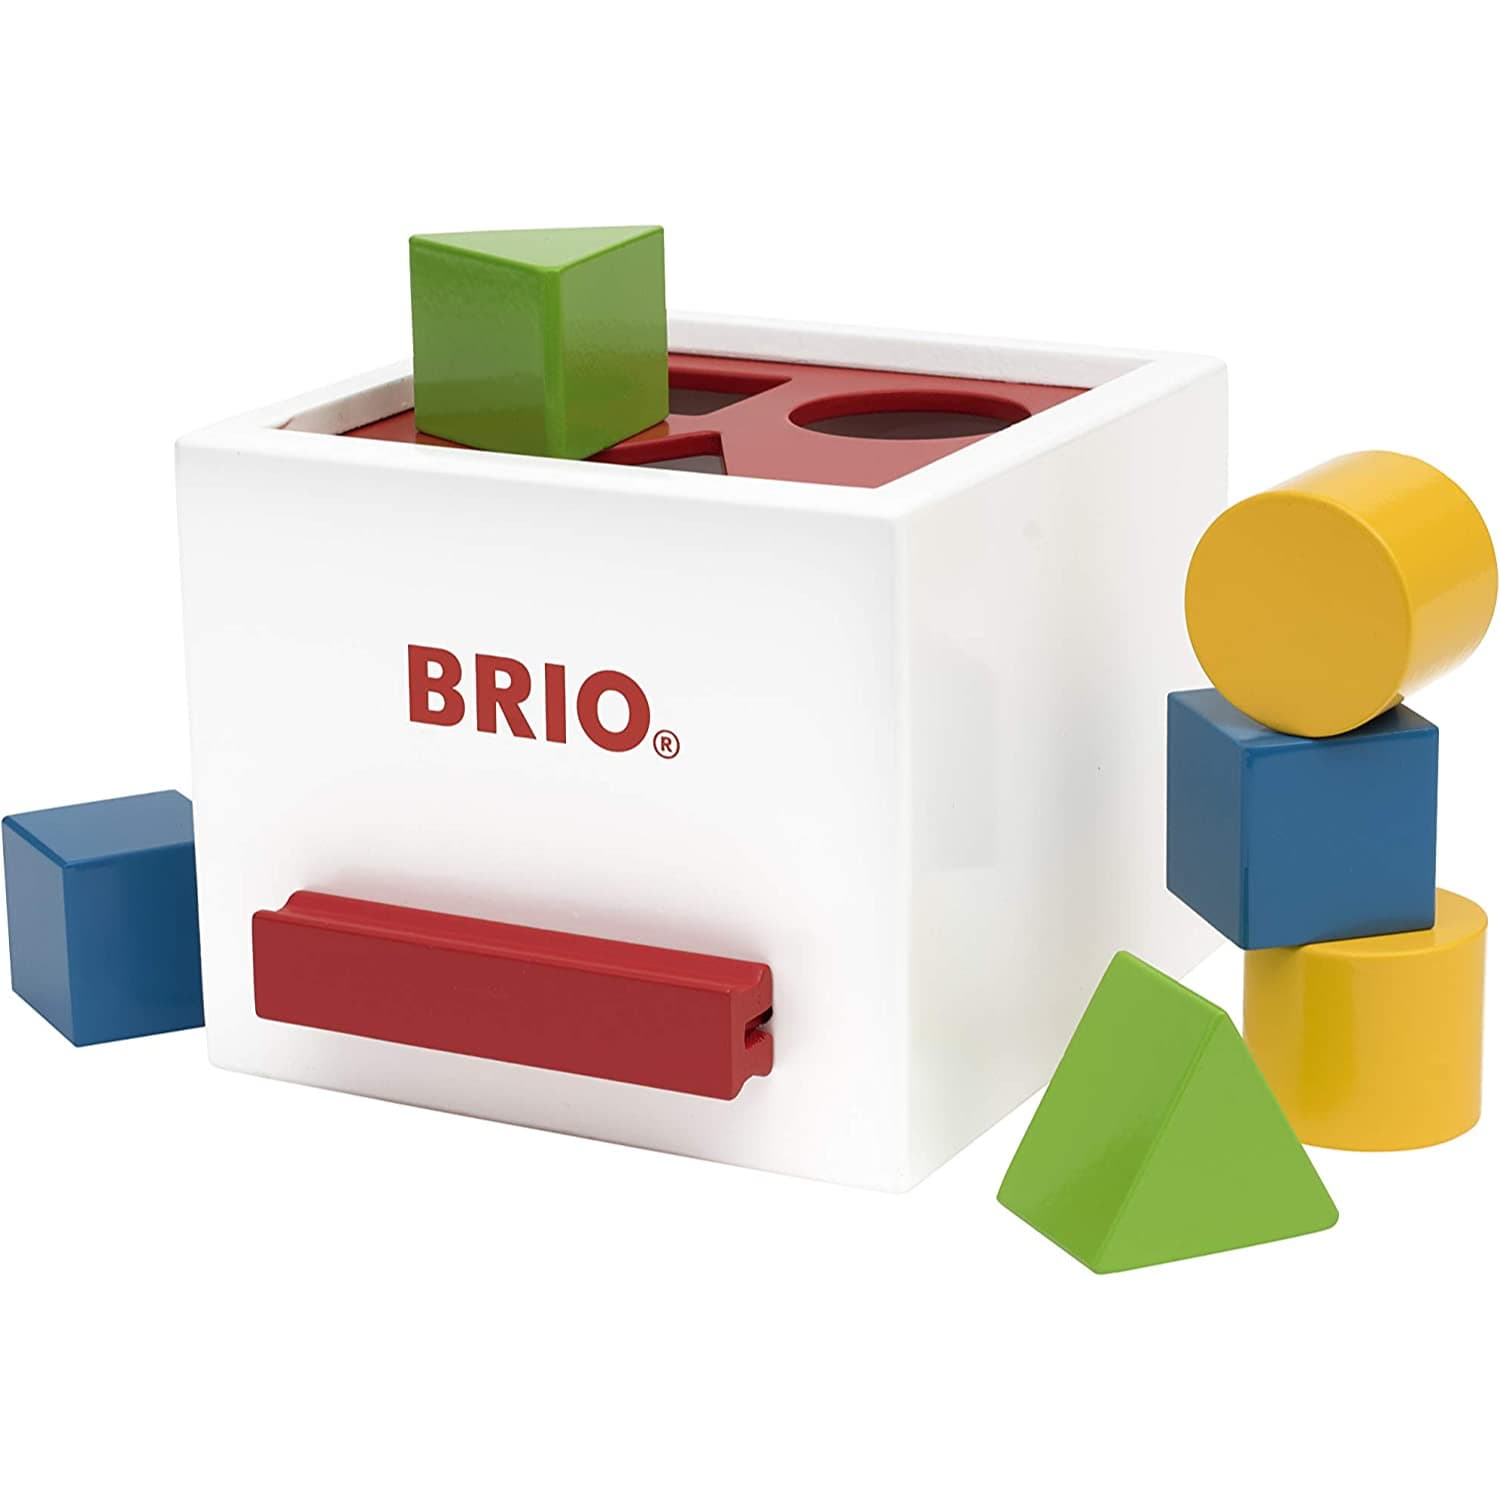 BRIO 形合わせボックス 白 30250 1歳から 木製玩具 木のおもちゃ 正規輸入品_1